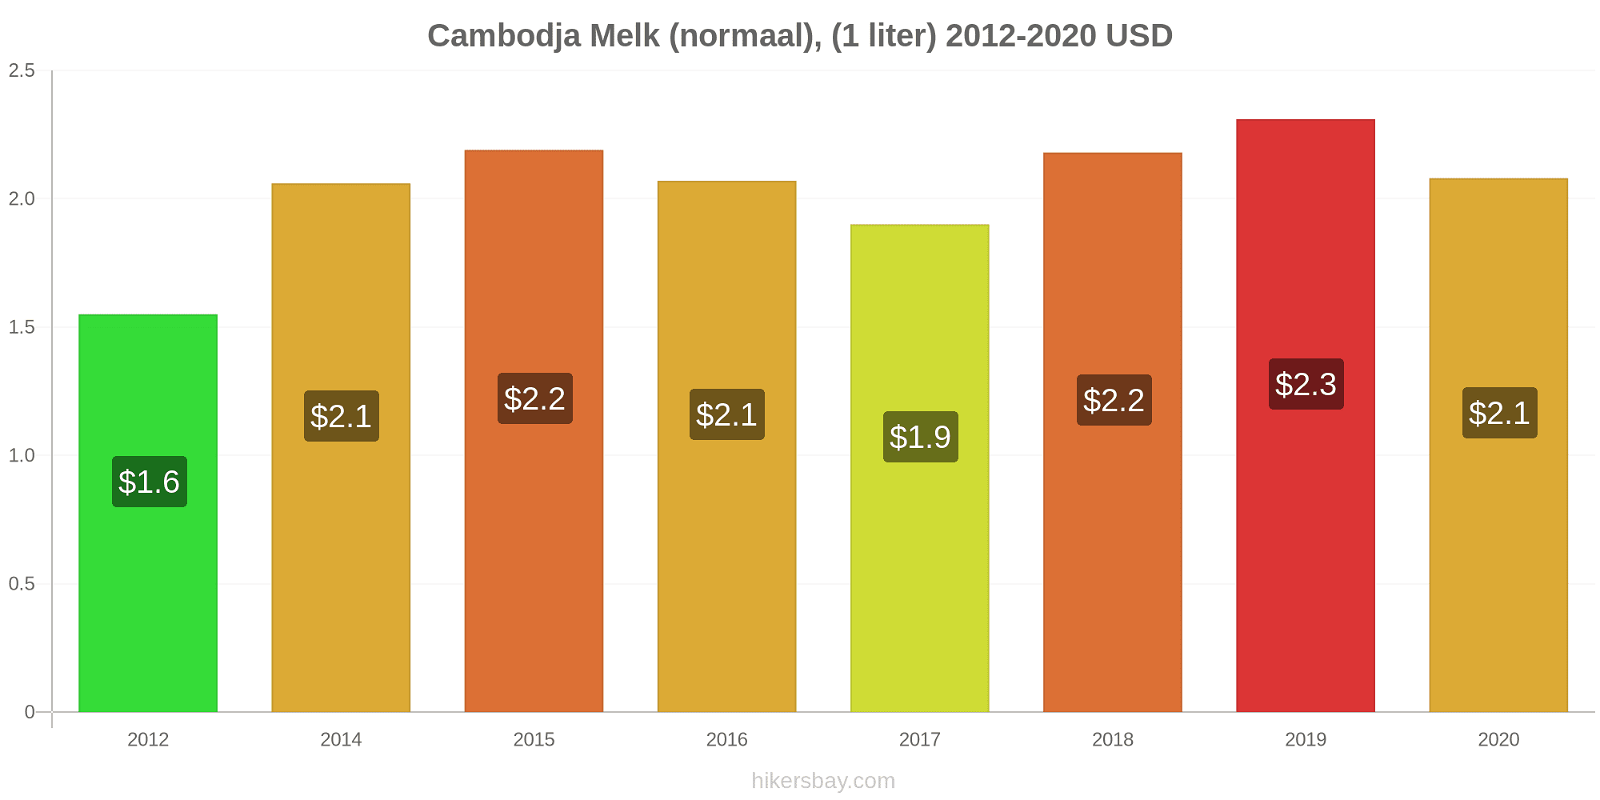 Cambodja prijswijzigingen Melk (regelmatige), (1 liter) hikersbay.com